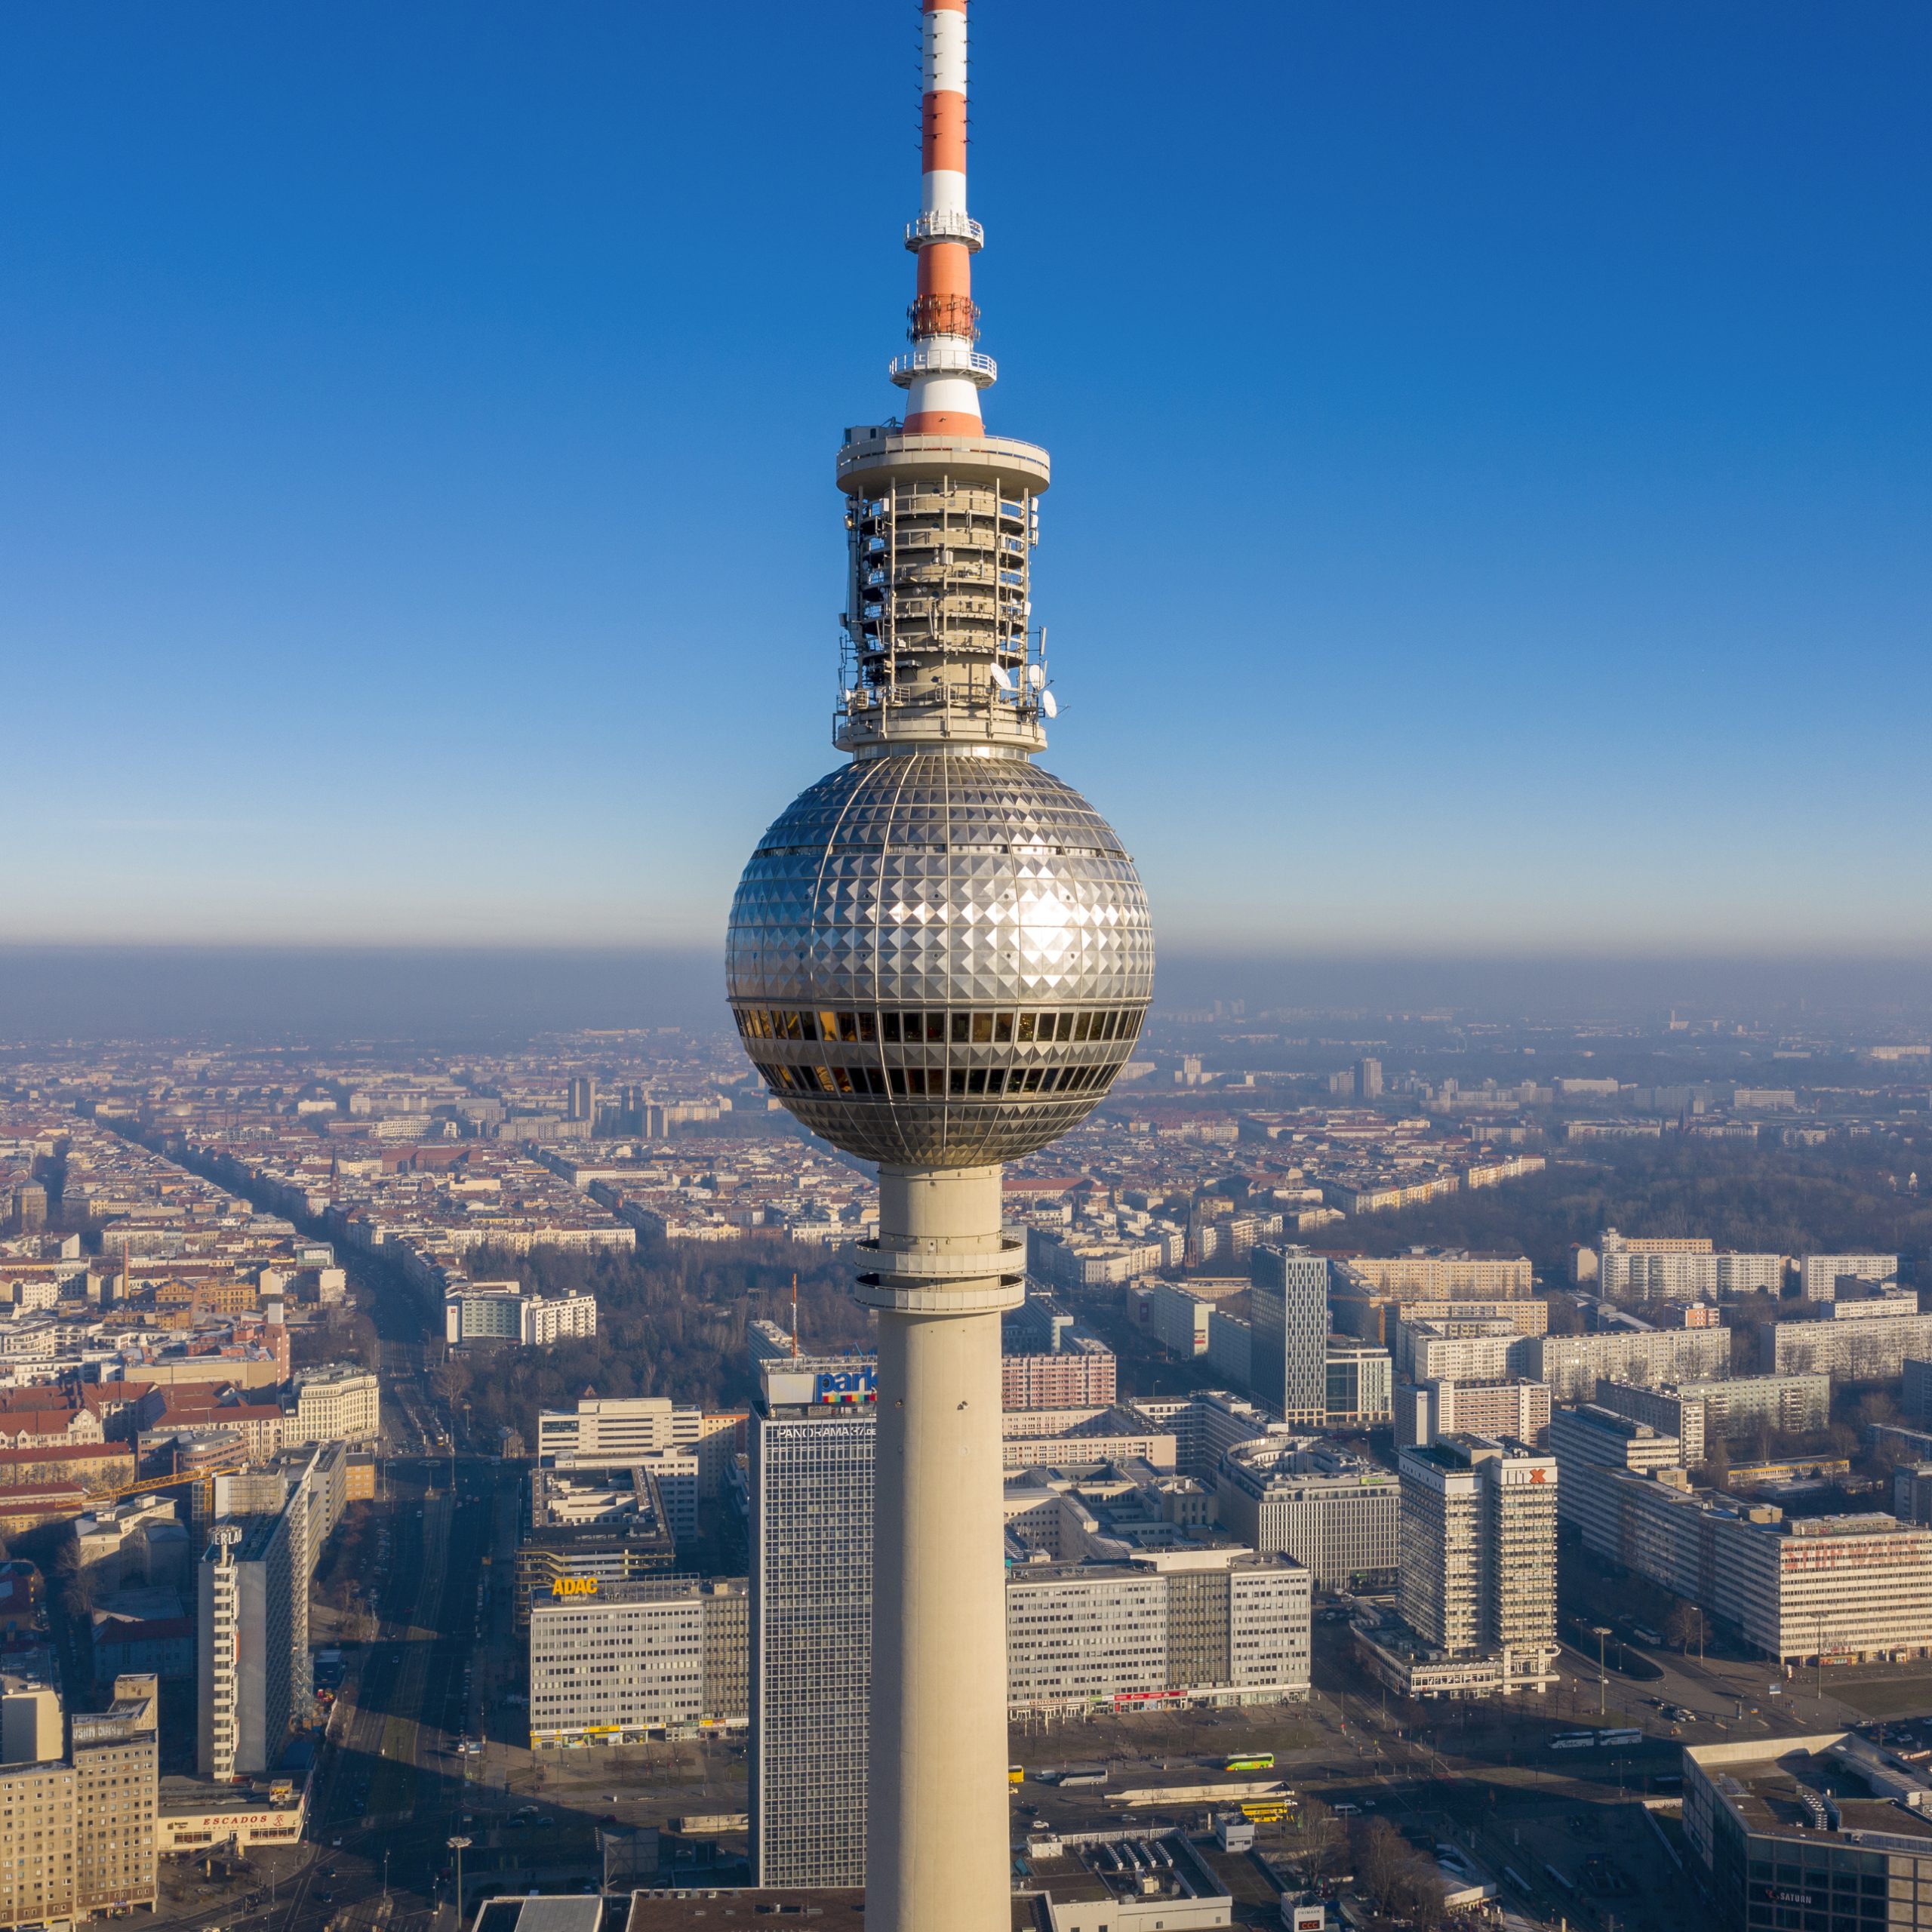 Výlet autem: Televizní věž Fernsehturm v Berlíně